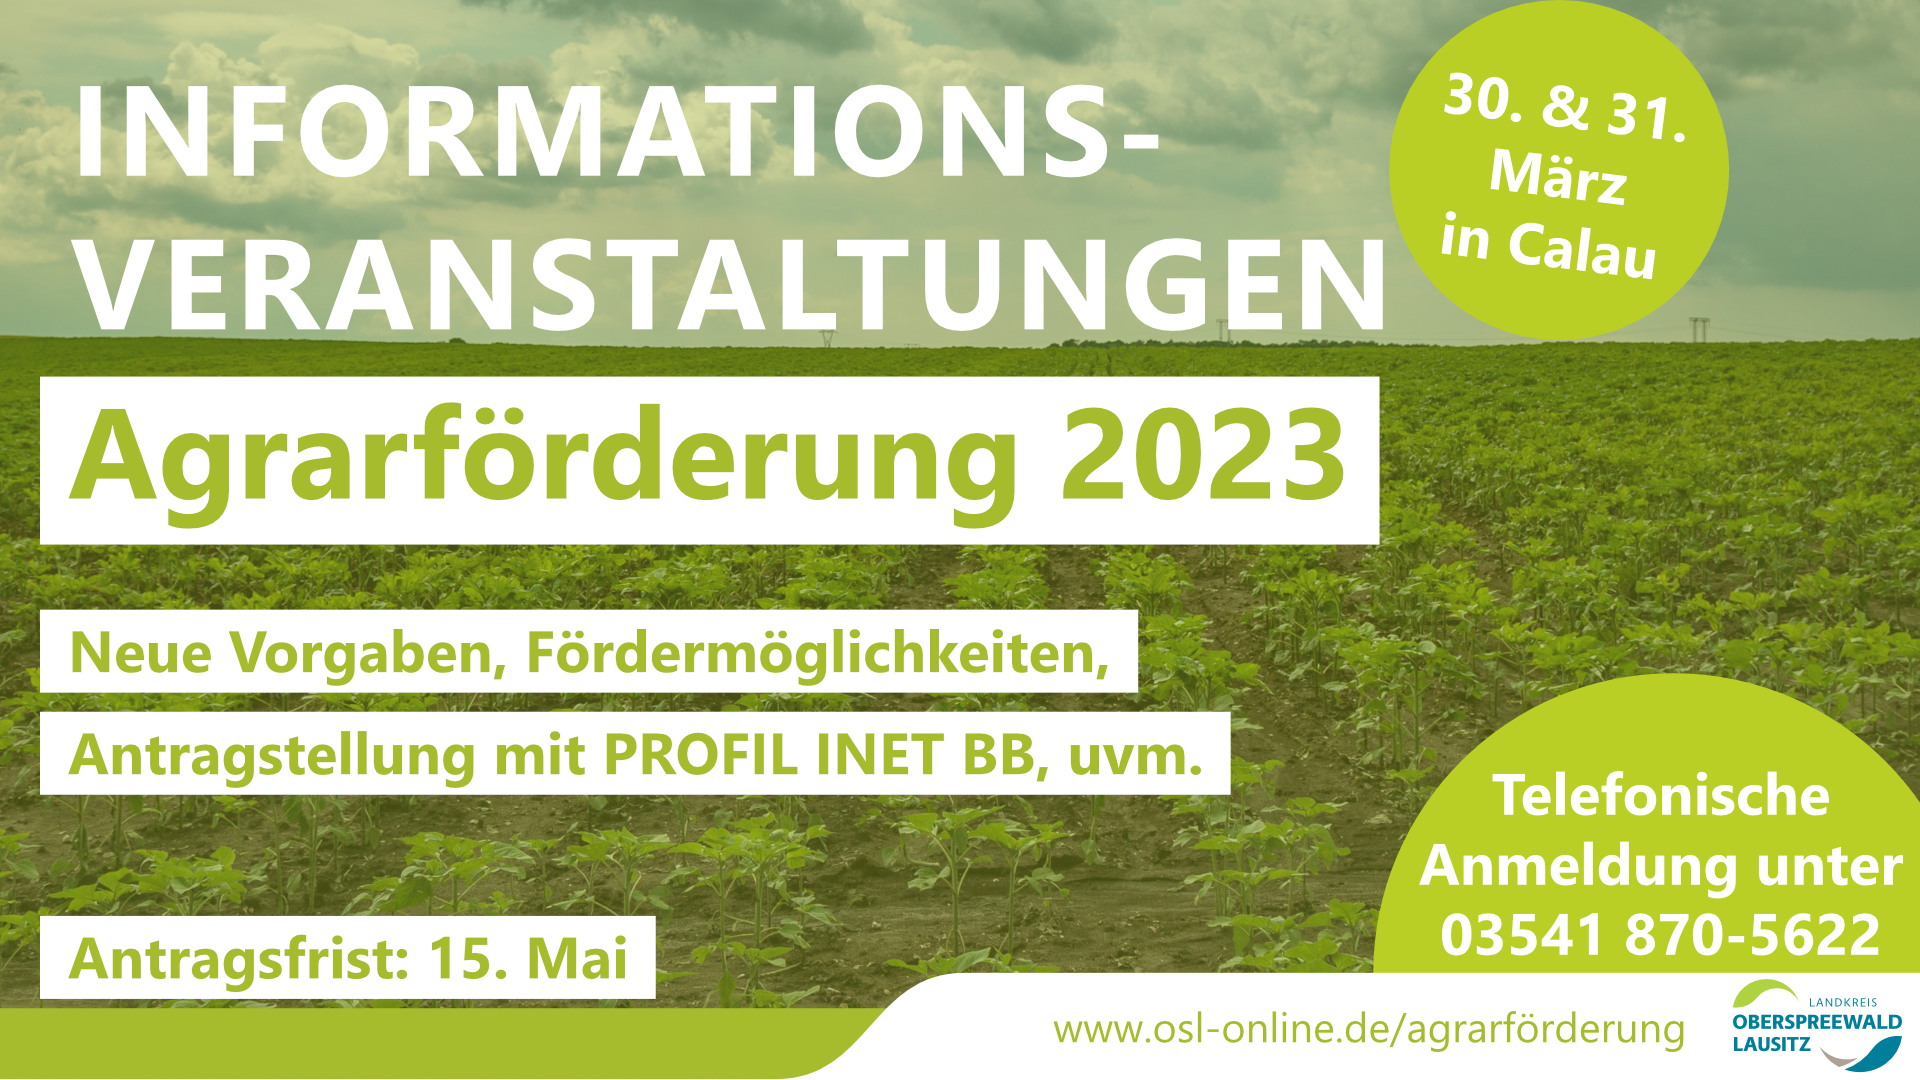 Informationsveranstaltungen zur Agrarförderung 2023 am 30. und 31. März 2023